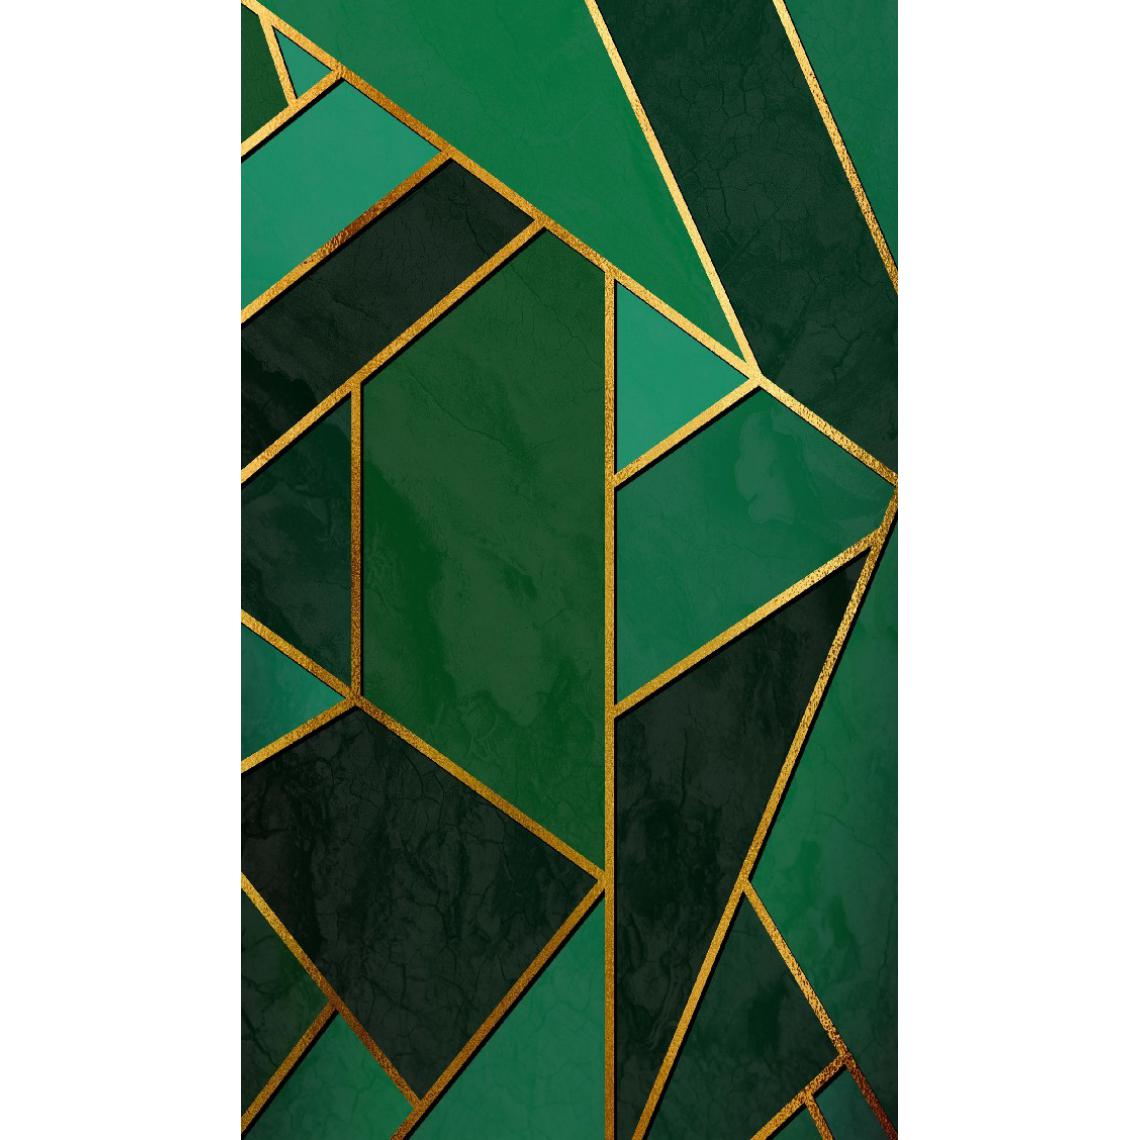 Homemania - HOMEMANIA Tapis Imprimé Gold Mosaic 1 - Géométrique - Décoration de Maison, tapis d'entrée - Antidérapant - pour Couloir, Cuisine, Chambre, Salon - Multicolore en Polyester, Coton, 80 x 200 cm - Tapis